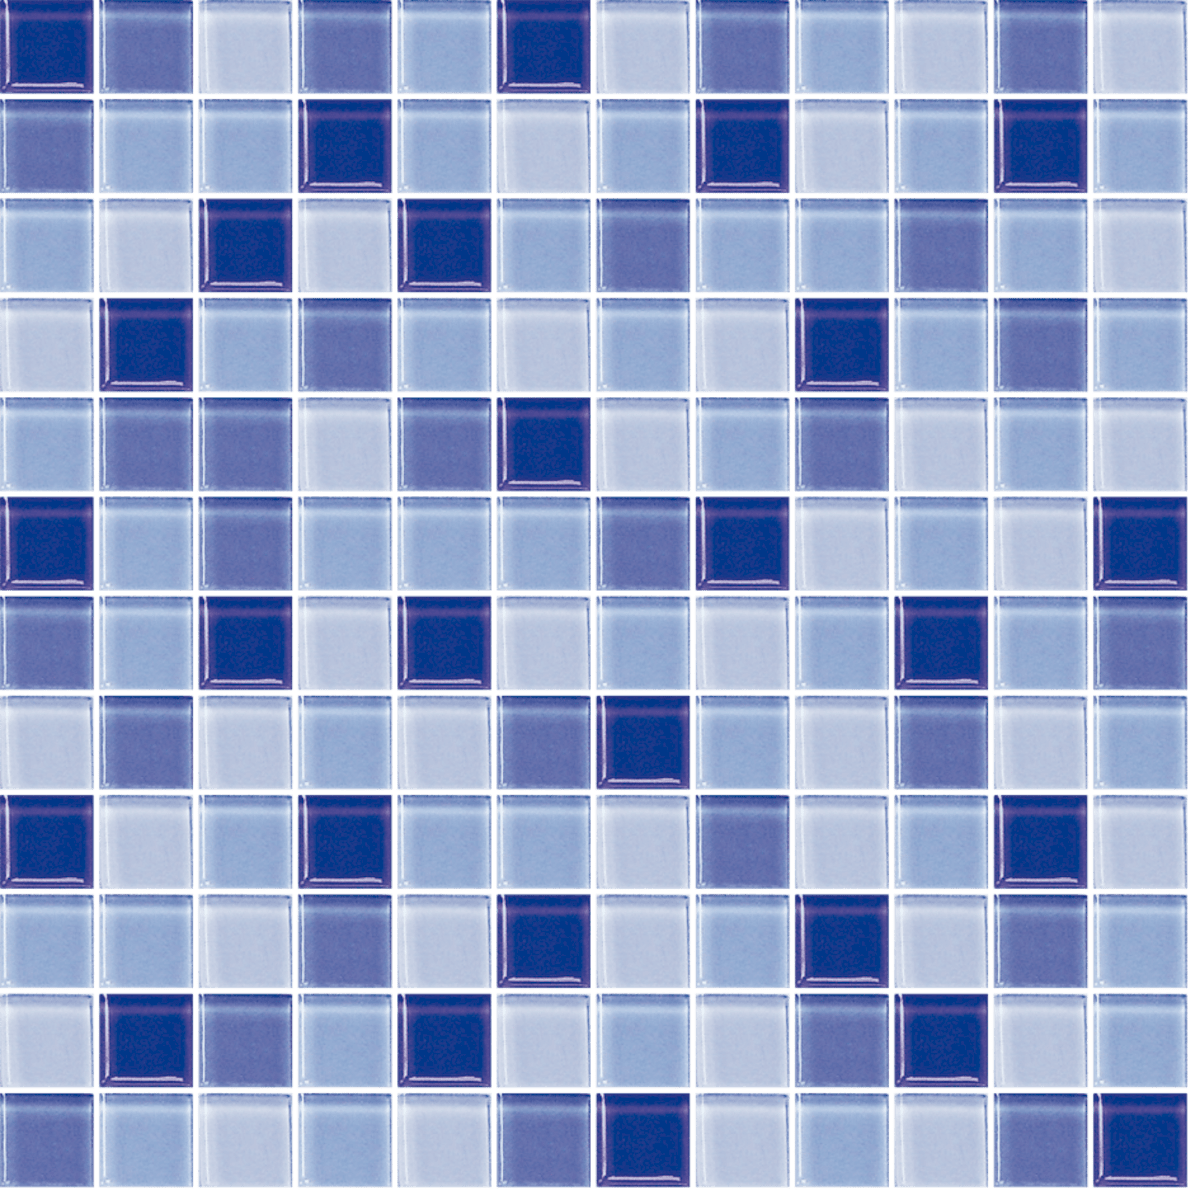 Skleněná mozaika Premium Mosaic modrá 30x30 cm lesk MOS25MIX5 Premium Mosaic